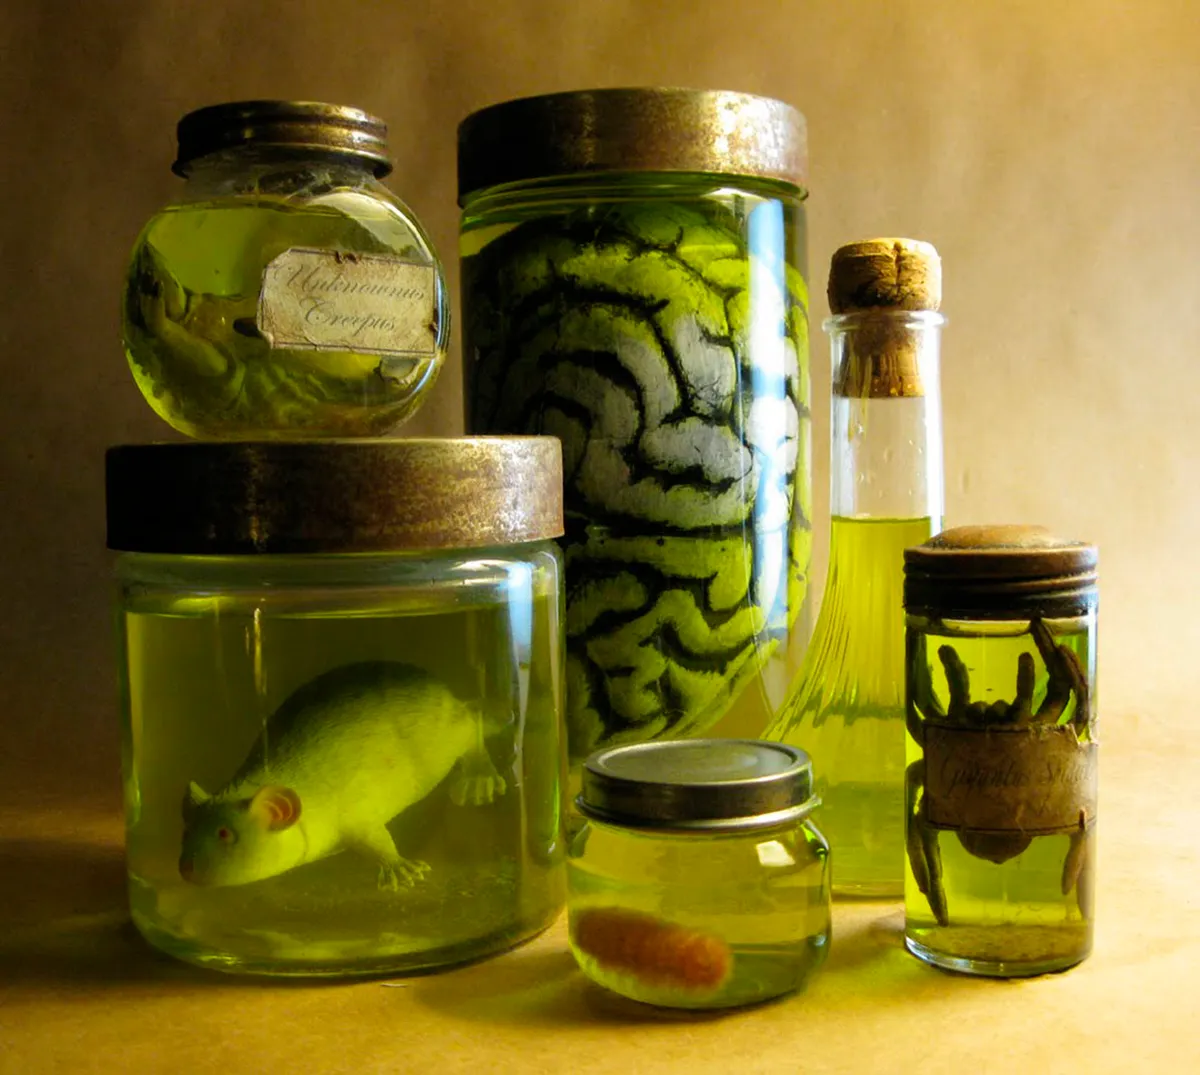 Halloween specimen jars